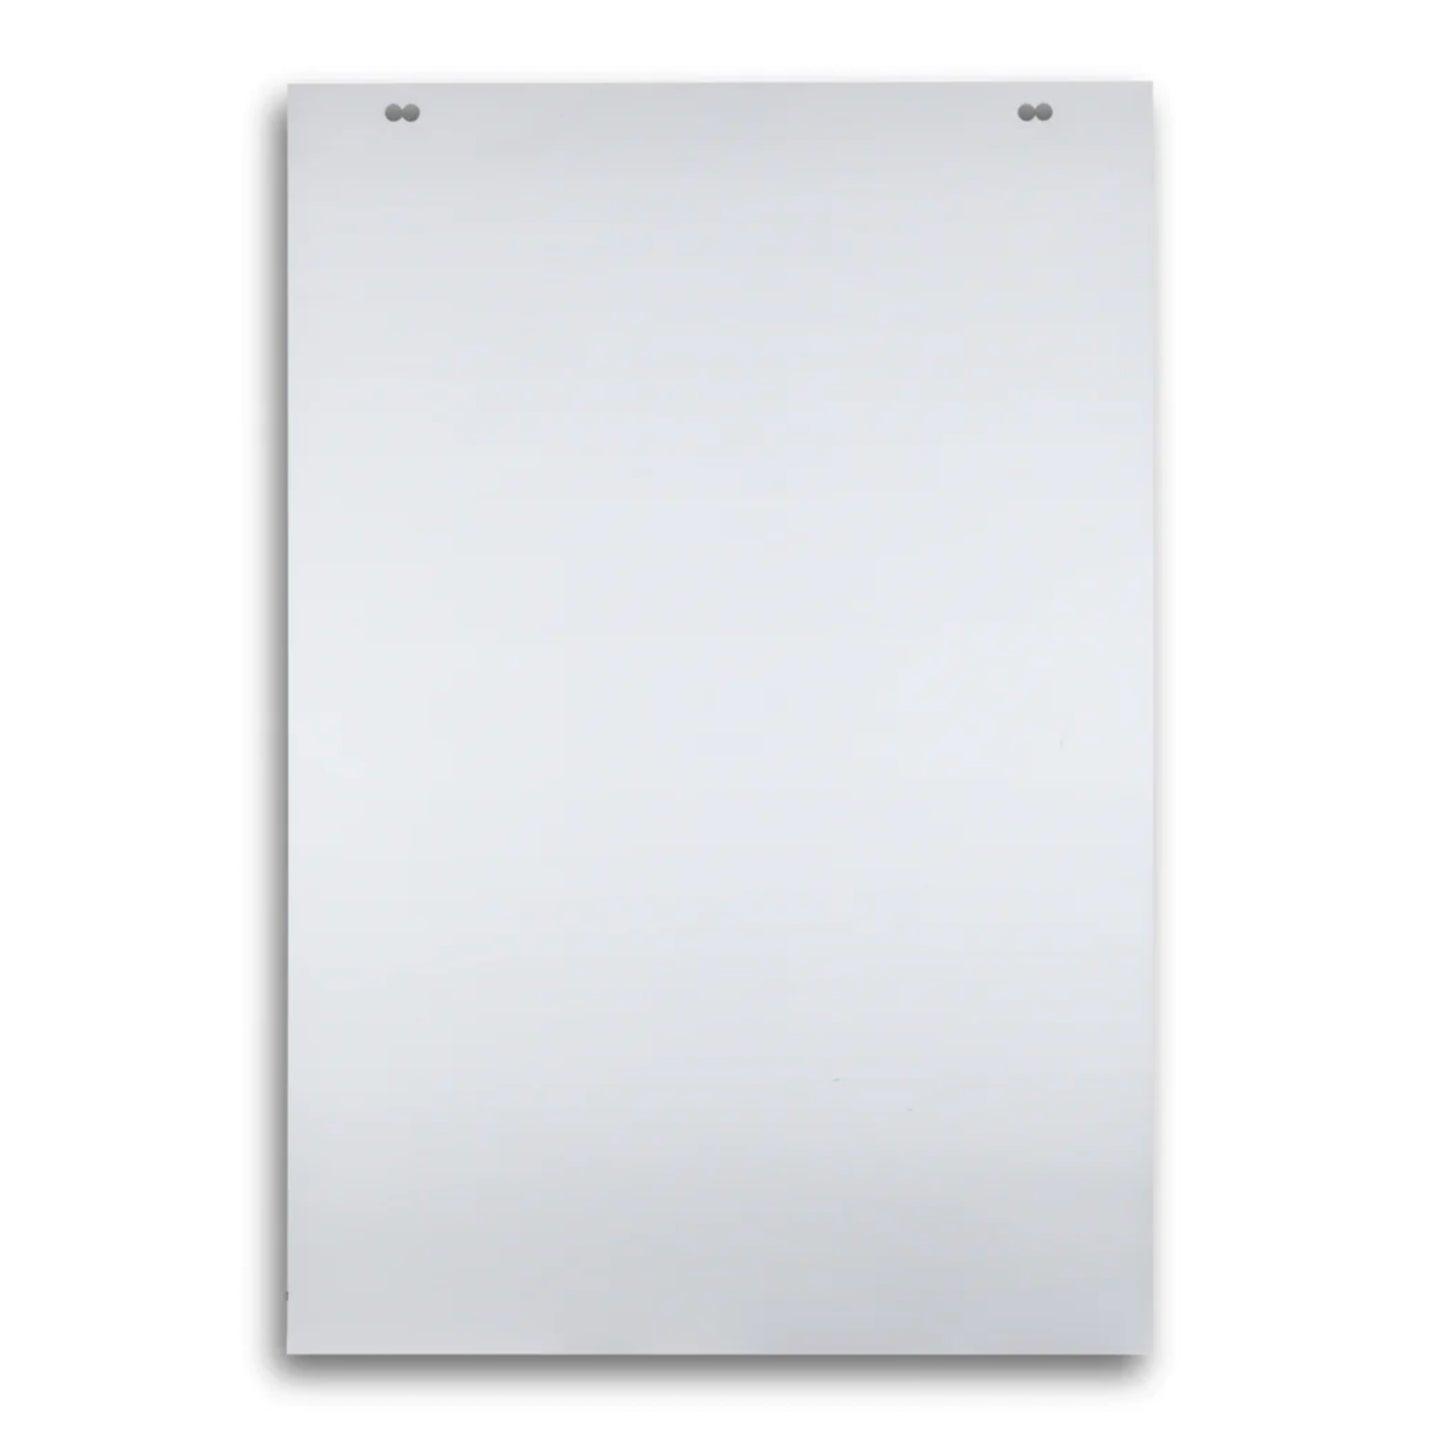 Flip Chart Paper Pads - Plain